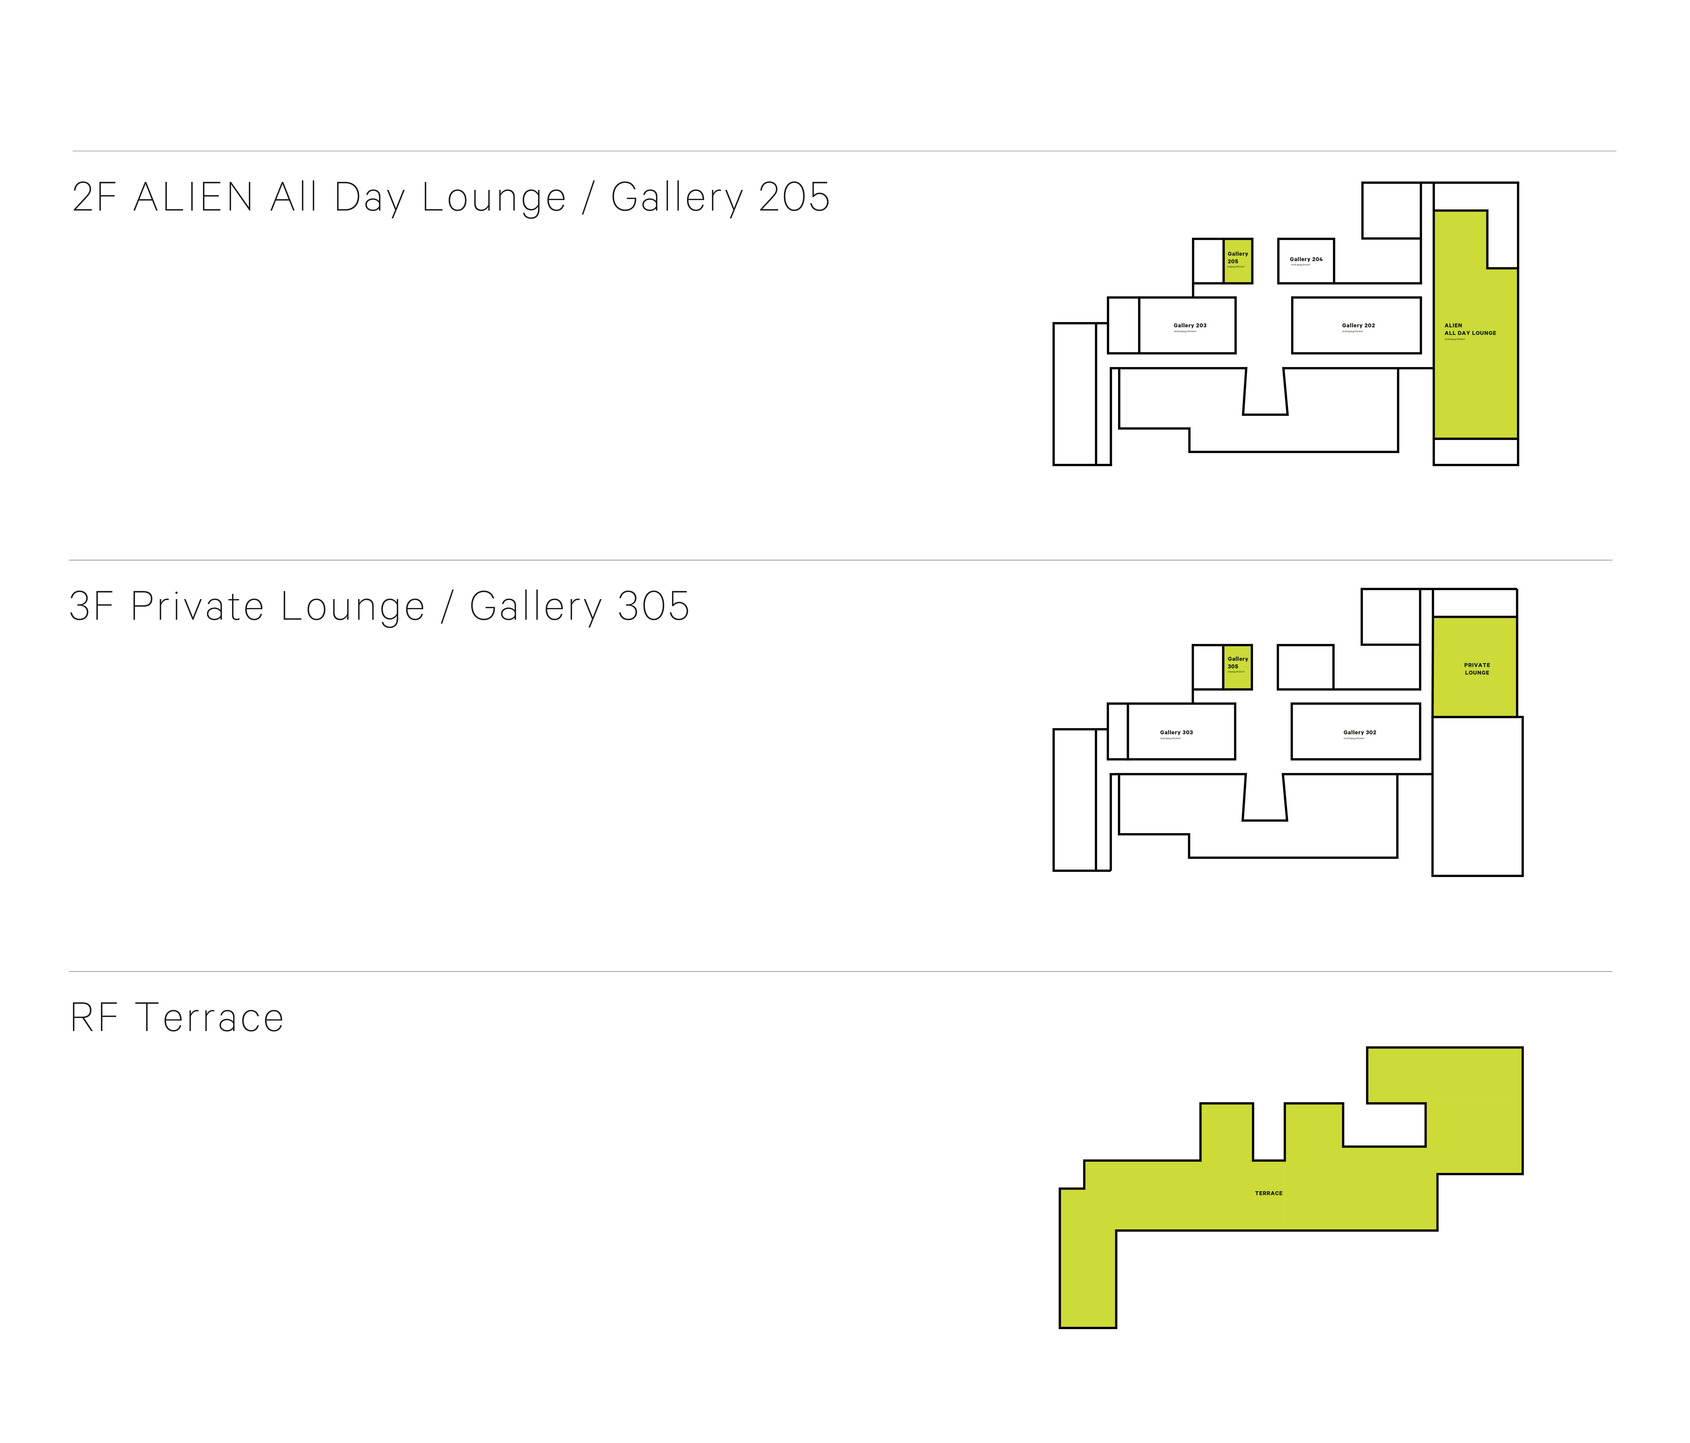 ALIEN Art Centre Overview 